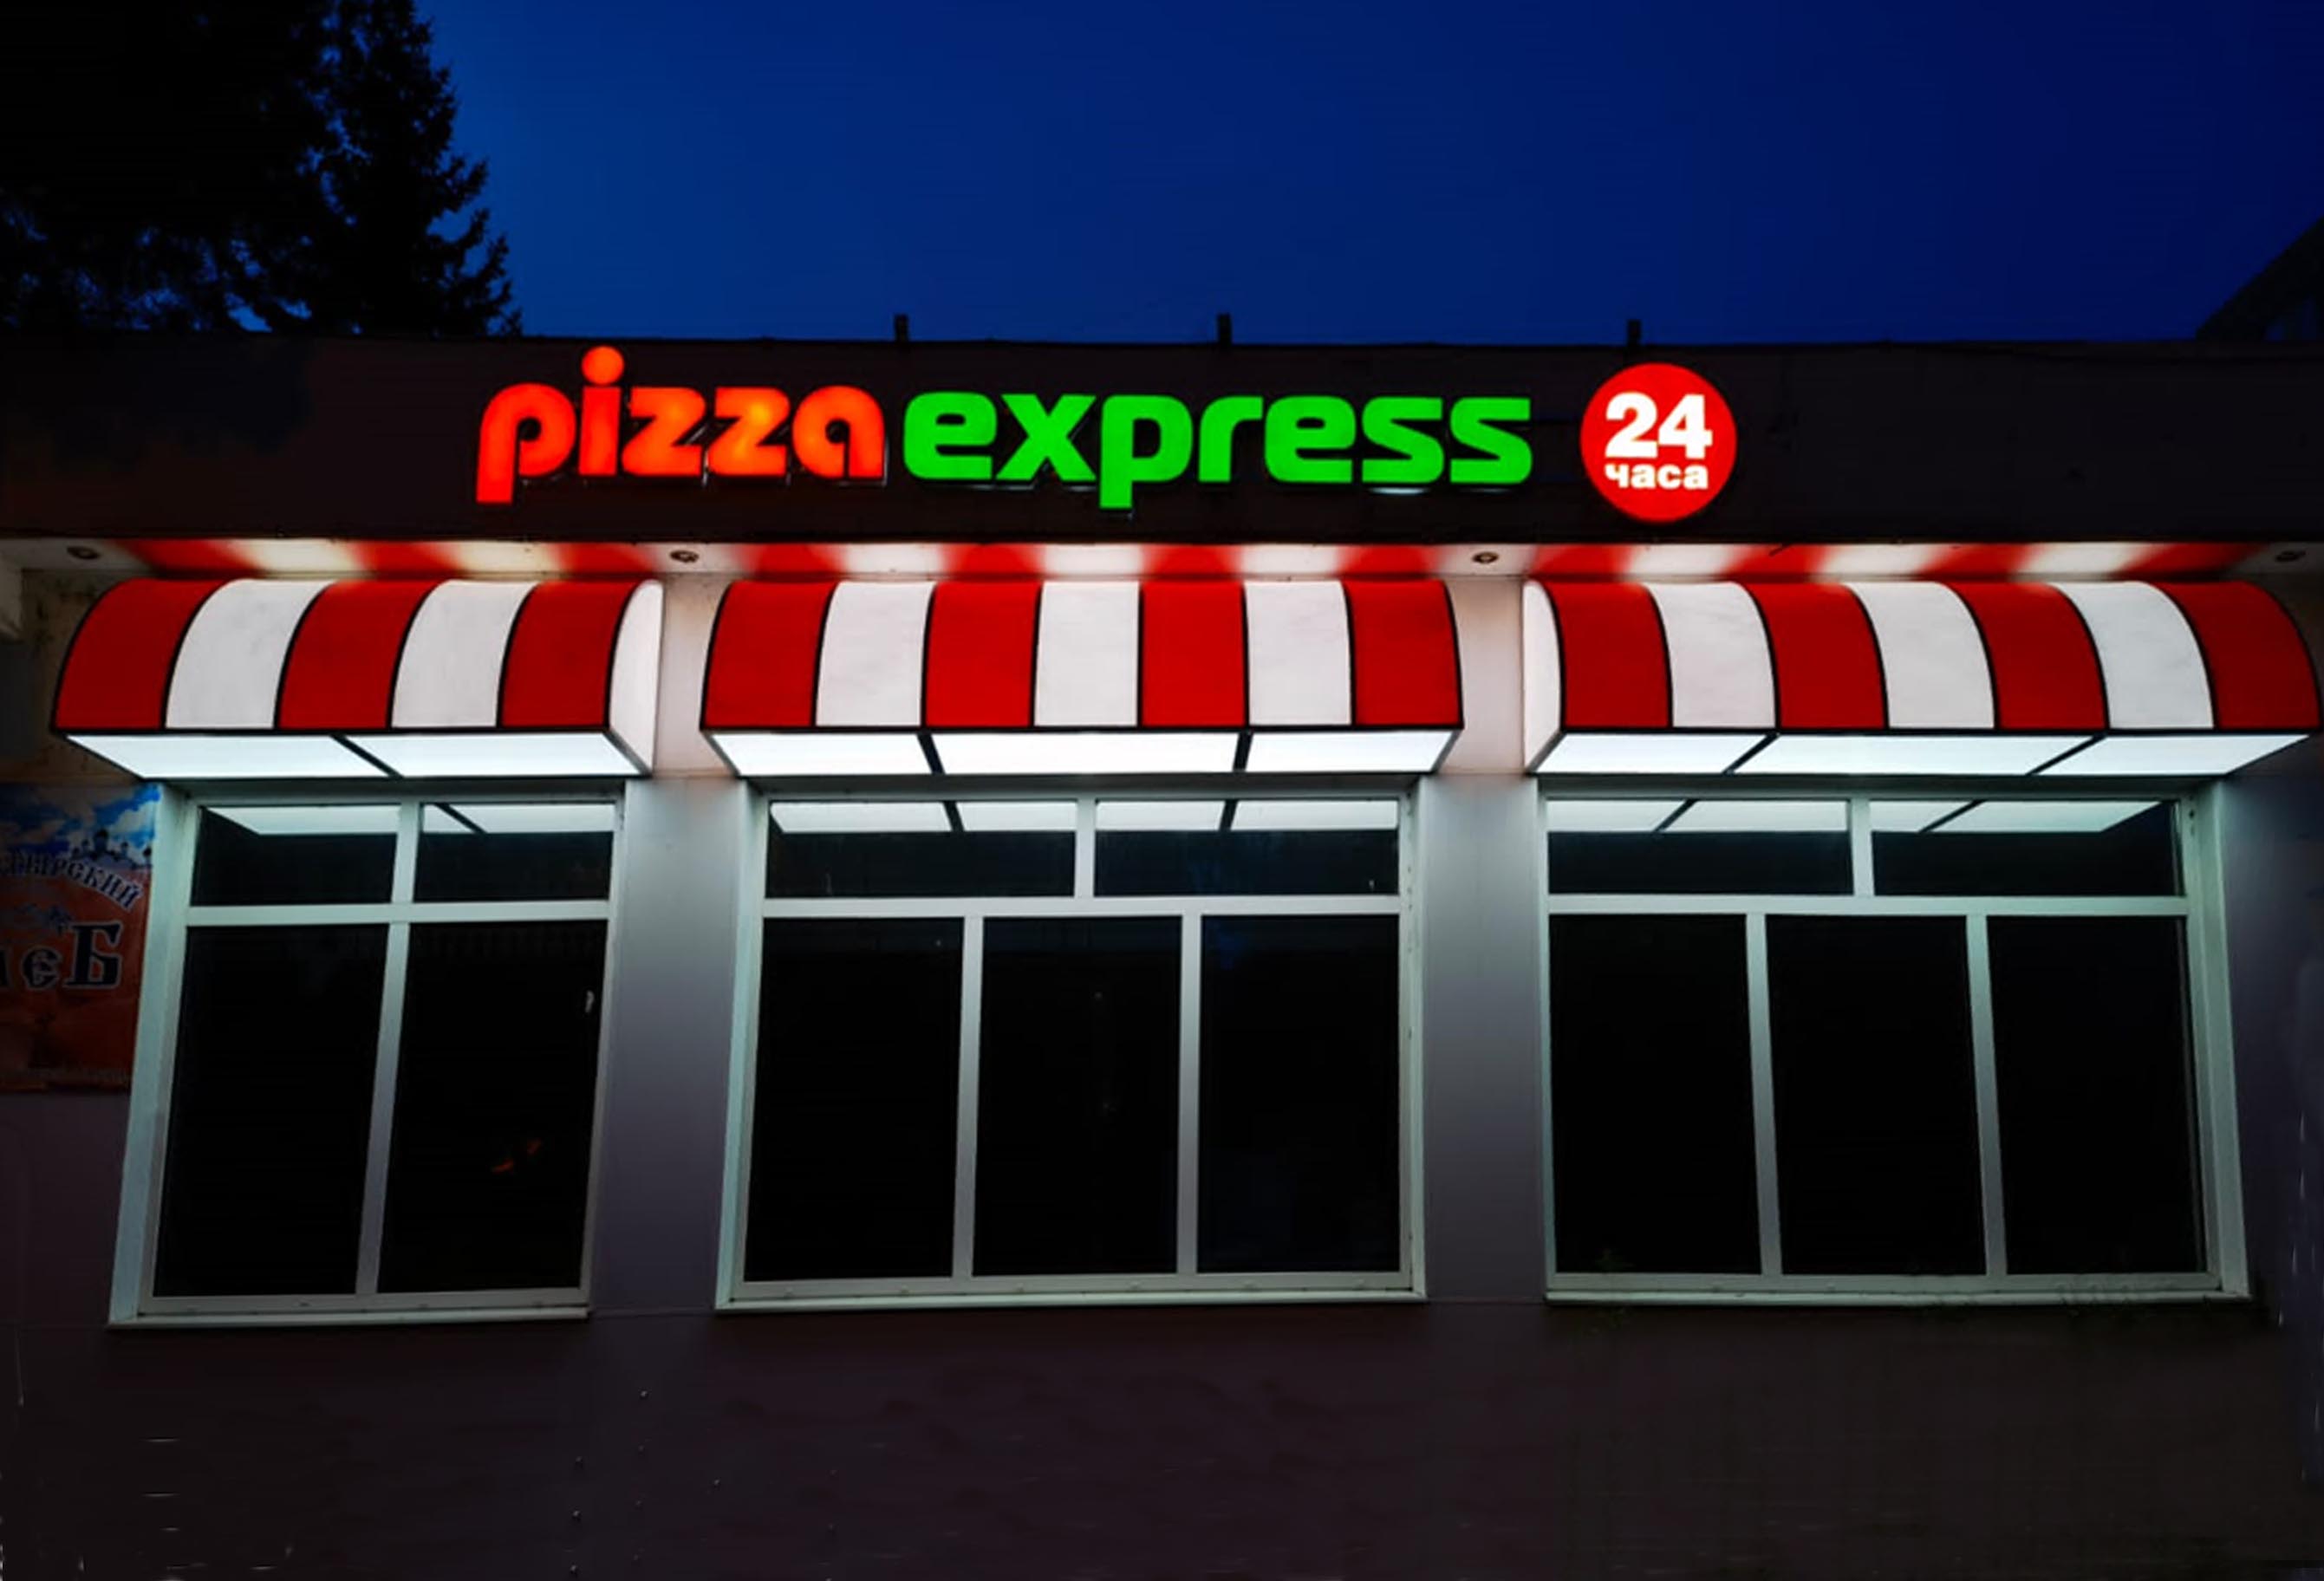 световые маркизы, цельноклеенные световыы буквы "PIZZA EXPRESS" и лого "24"